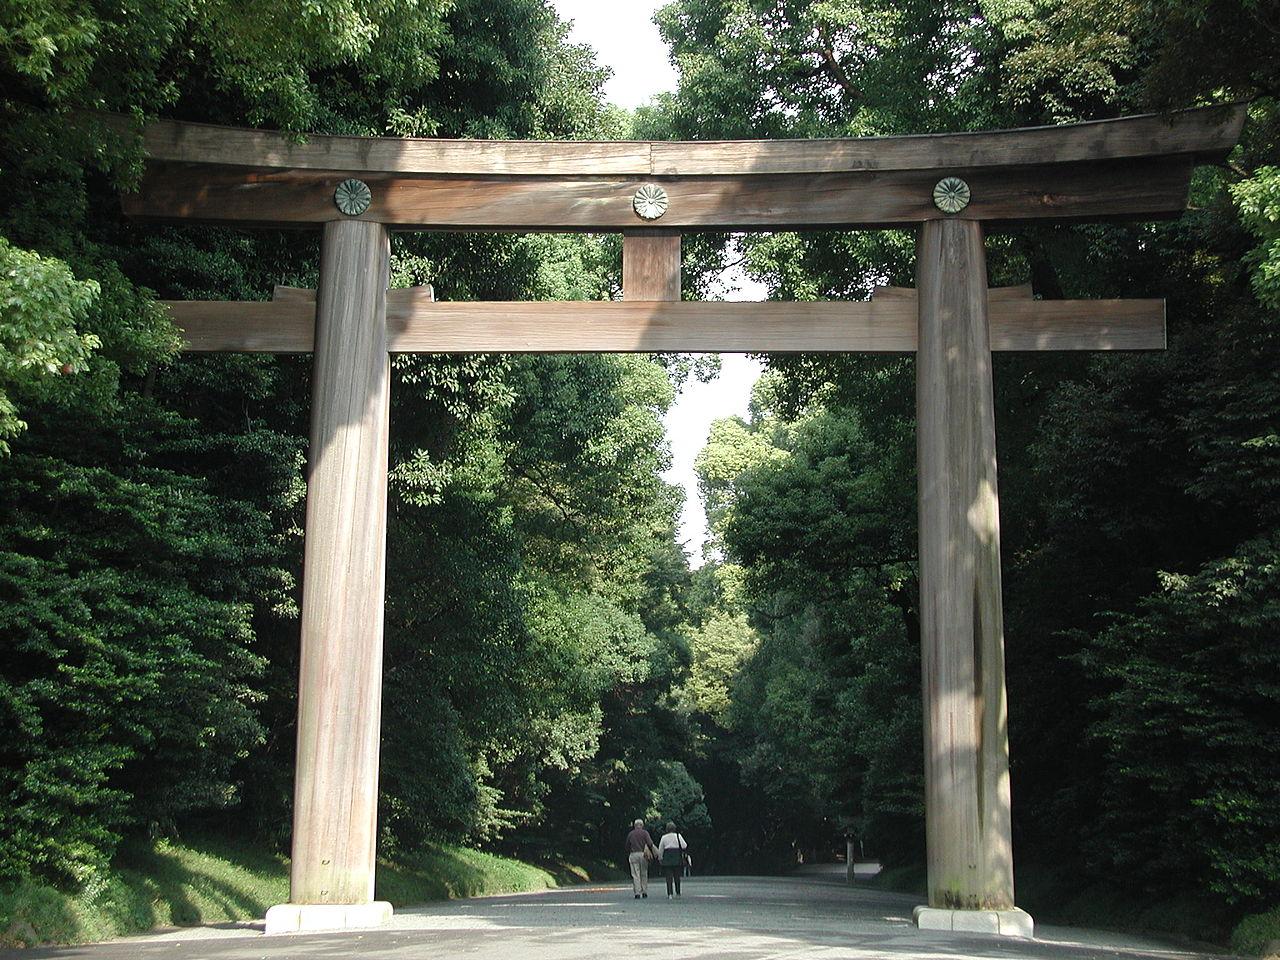 Meiji, Shibuya, Tokio źródłohttpsen.wikipedia.orgwikiMeiji_Shrine#mediaFileMeiji-jingu_torii.JPG